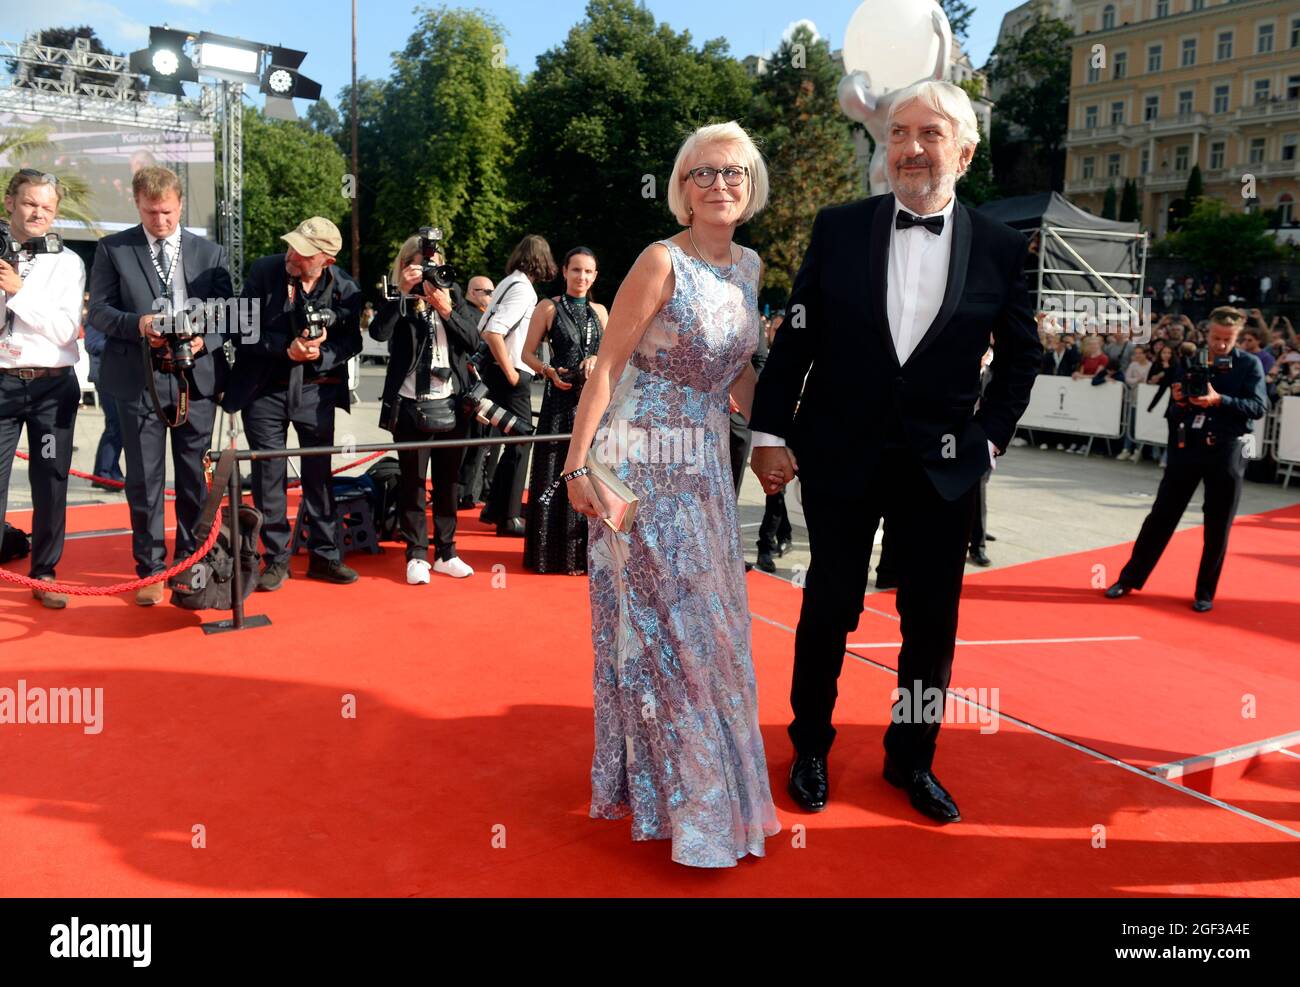 L'attore Miroslav Donutil e sua moglie Zuzana arrivano al 55° Festival Internazionale del Film di Karlovy Vary (KVIFF) a Karlovy Vary, Repubblica Ceca, agosto Foto Stock